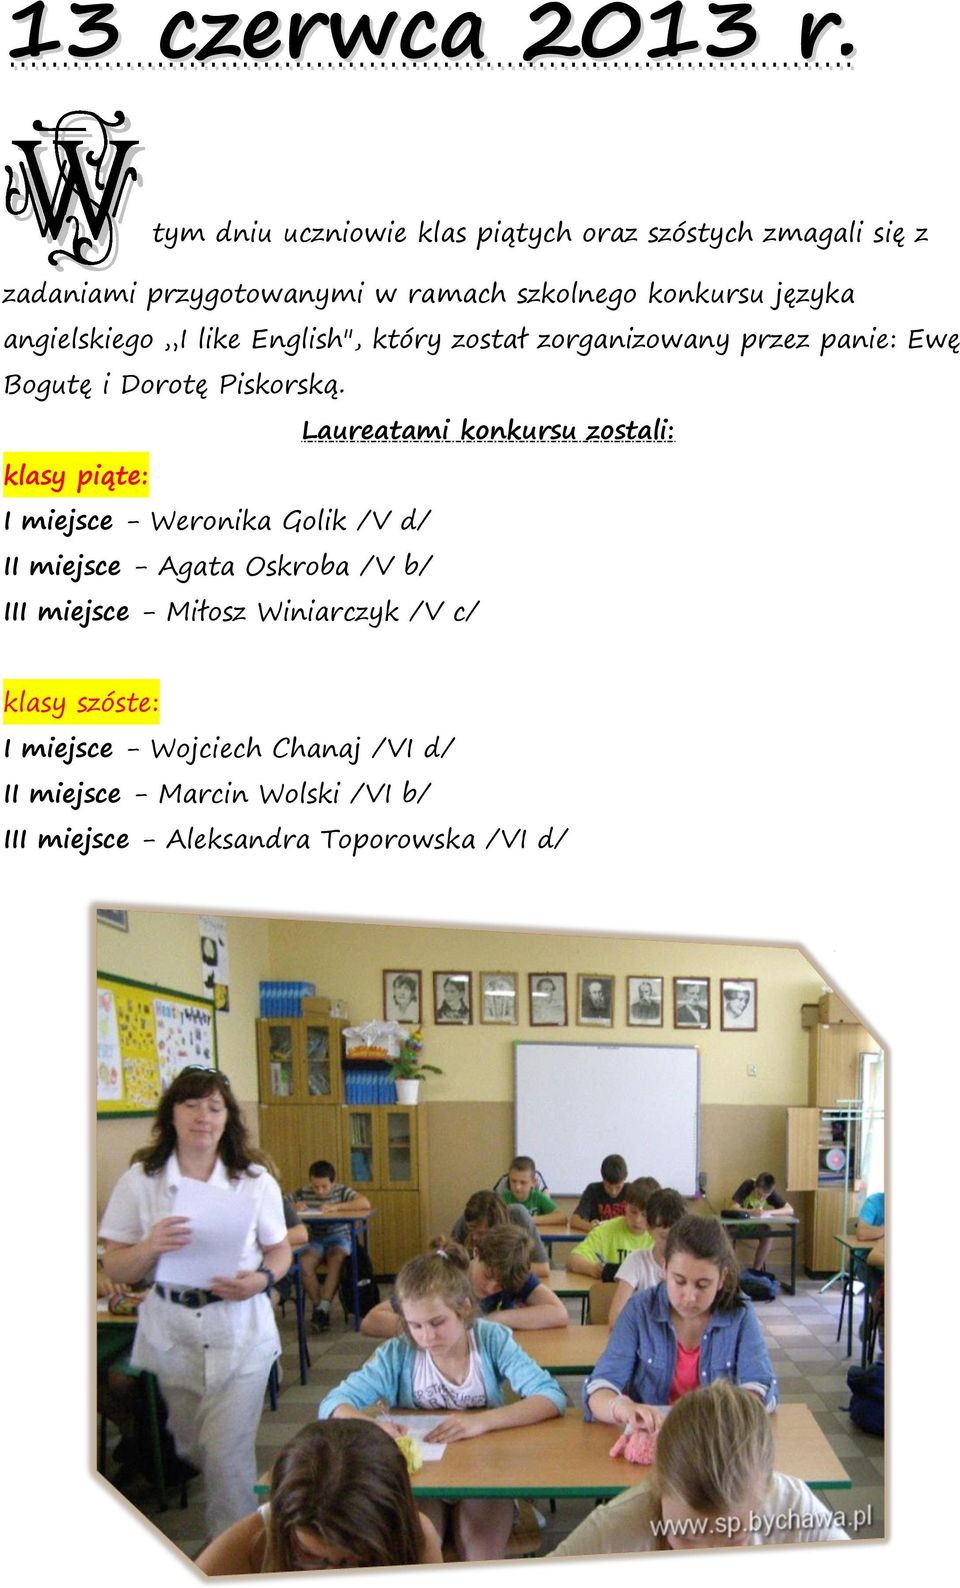 angielskiego I like English", który został zorganizowany przez panie: Ewę Bogutę i Dorotę Piskorską.